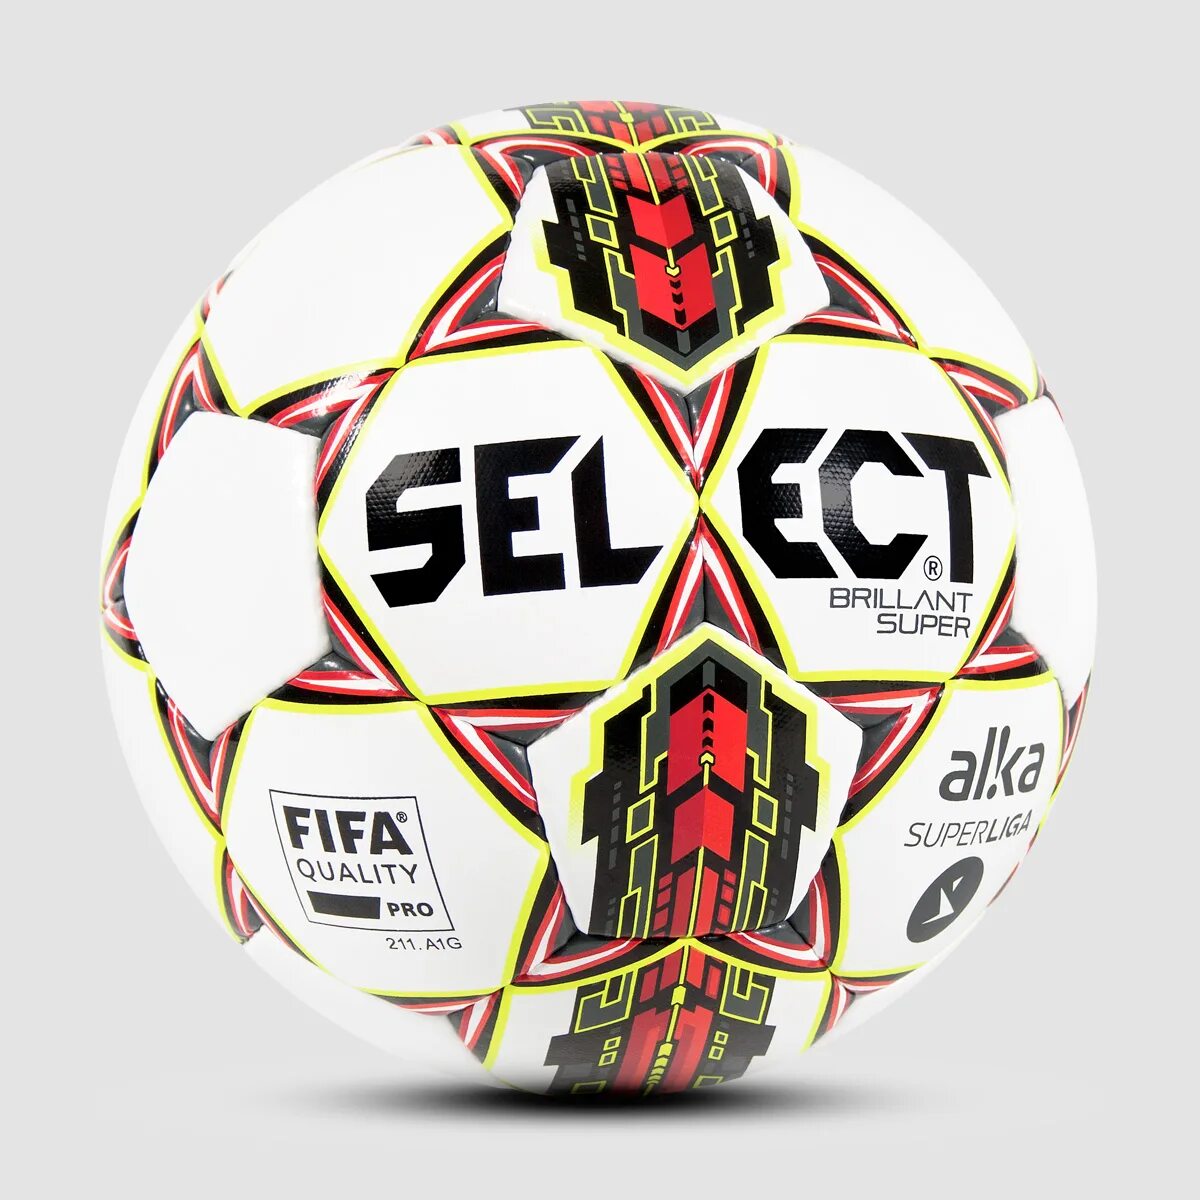 Селект. Select brillant super 2021. Селект бриллиант супер ТБ. Select Brilliant super красный. Select Brilliant super FIFA 2008.